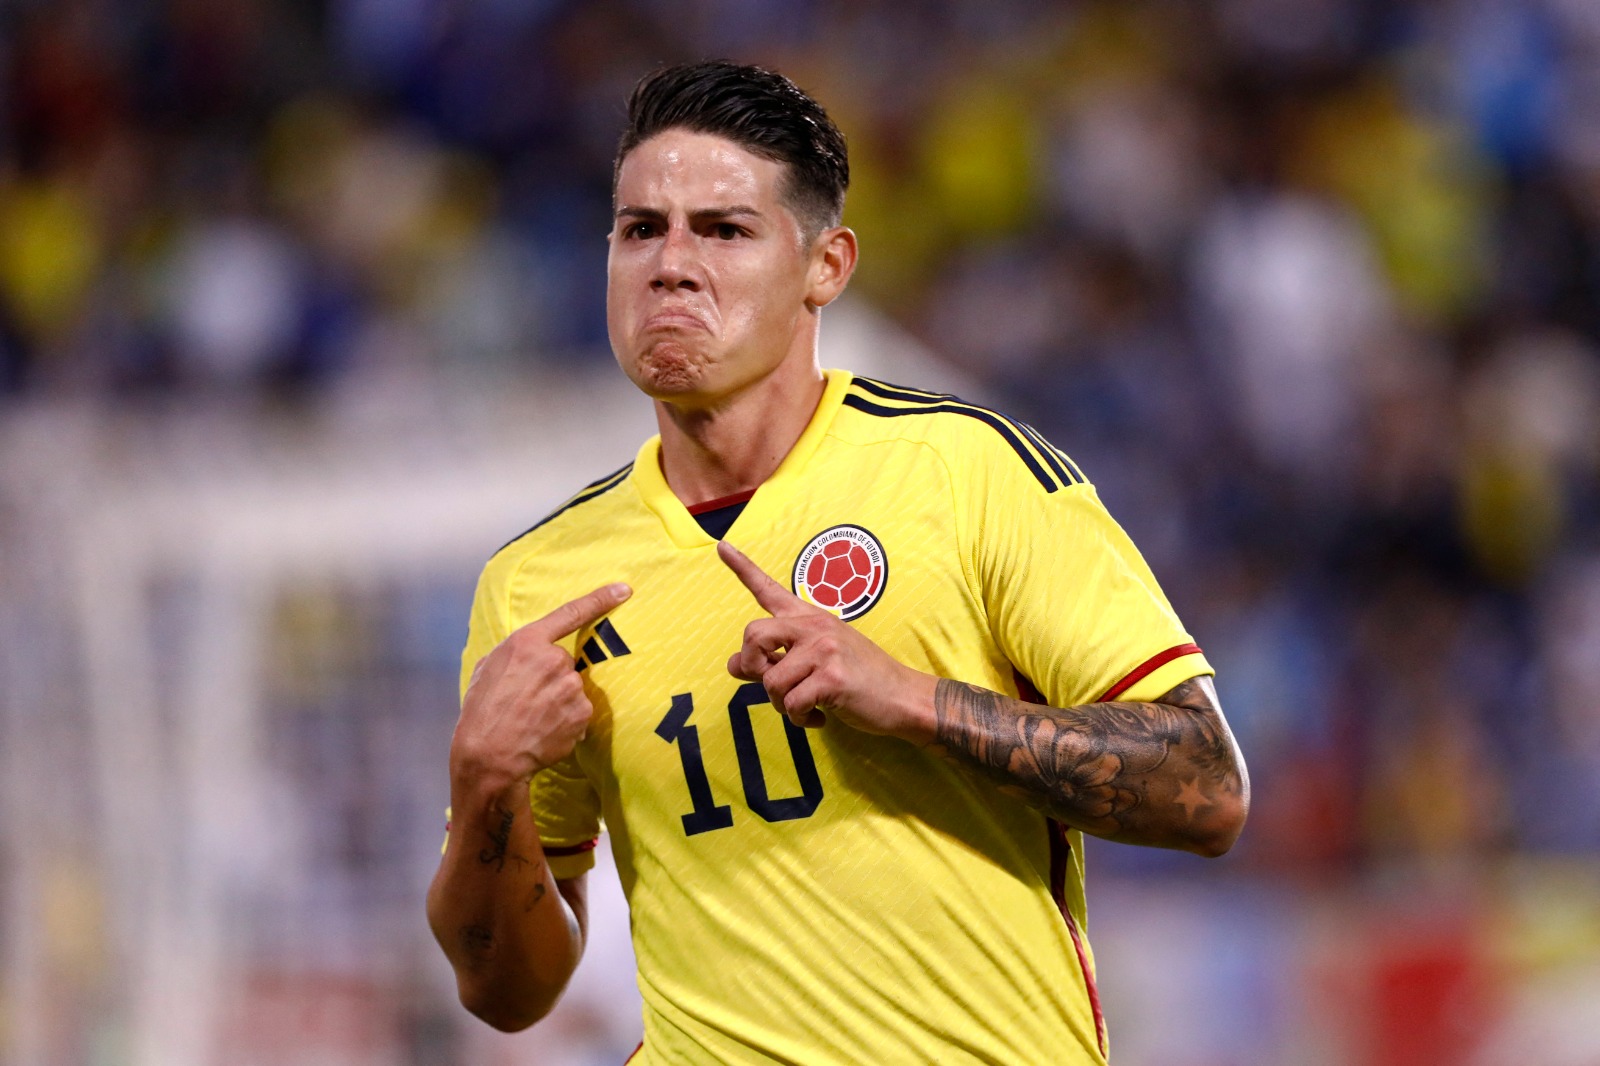 James Rodríguez comemorando gol na seleção colombiana (Foto: ANDRES KUDACKI/AFP via Getty Images)